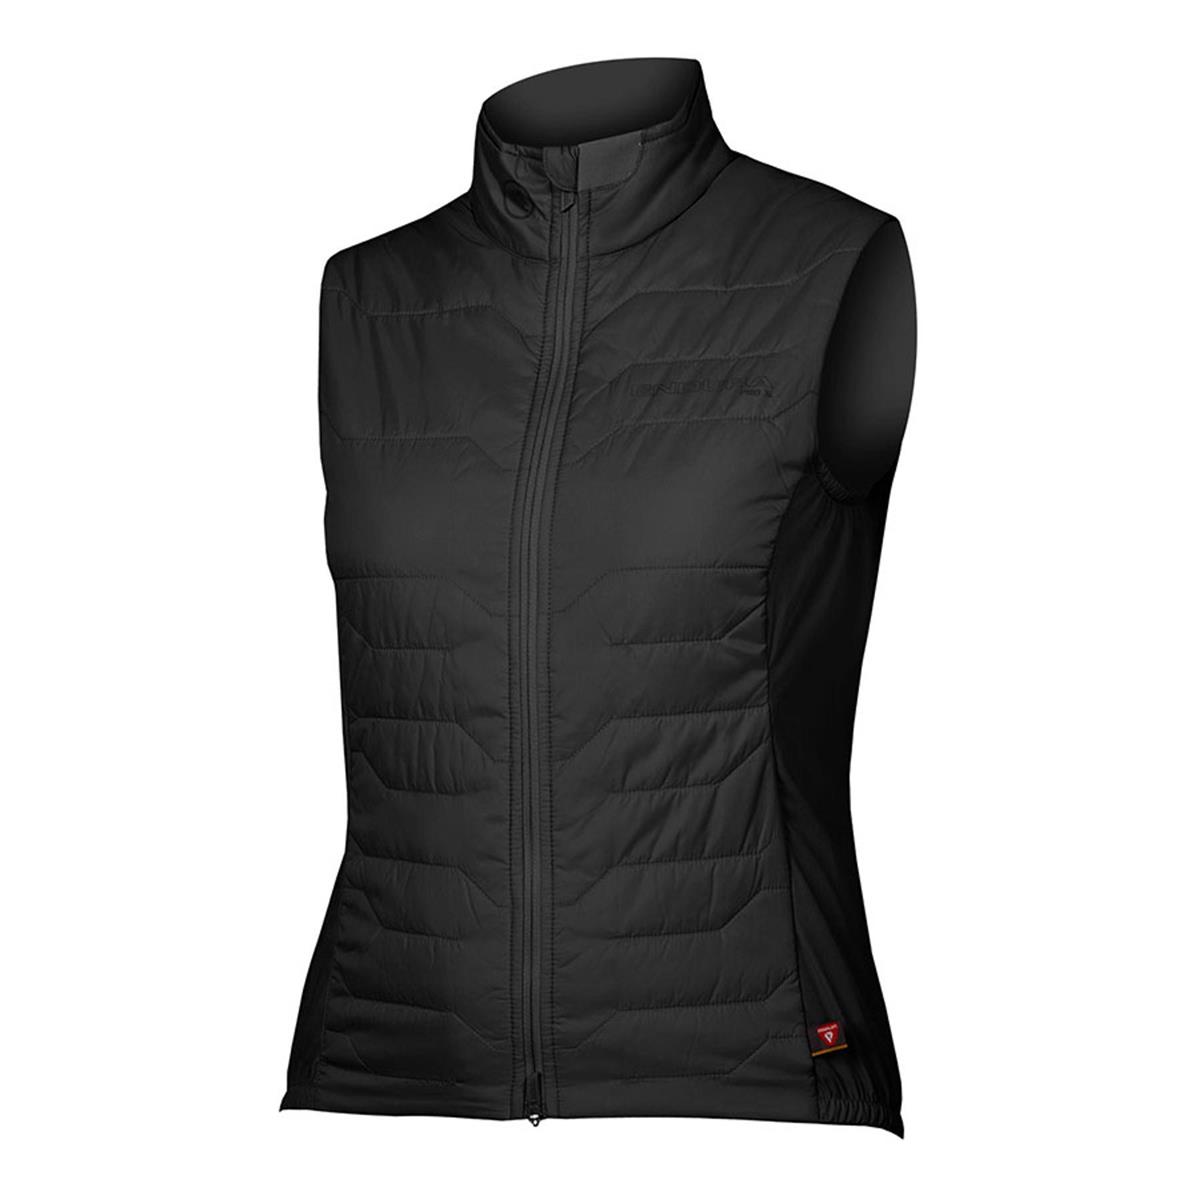 Pro SL PrimaLoft Rain/Windproof Vest - Chaleco para mujer, color negro, talla S